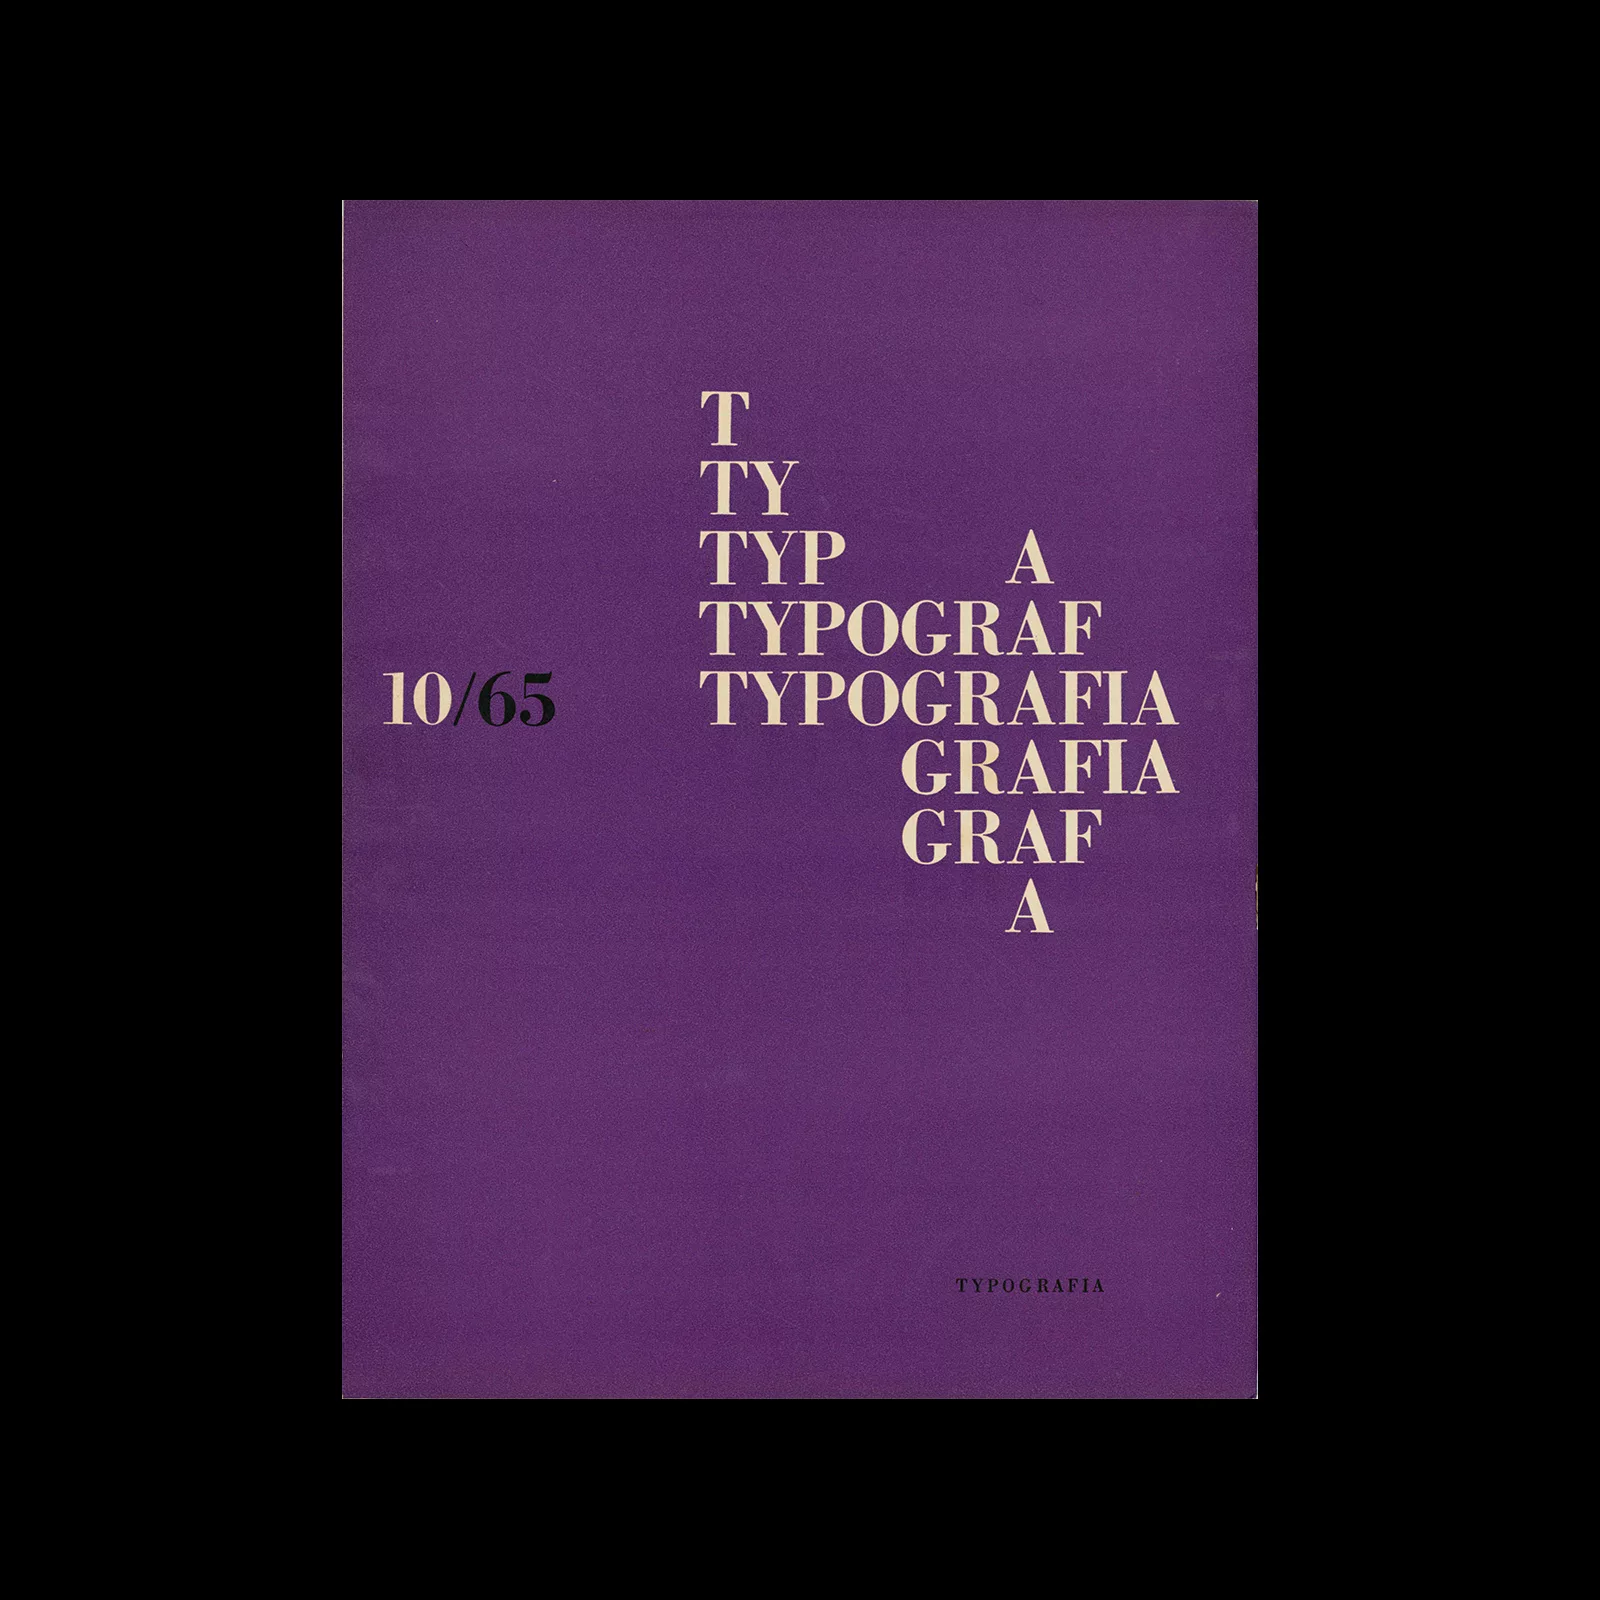 Typografia, ročník 68, 10, 1965. Cover design by Antonín Ernest